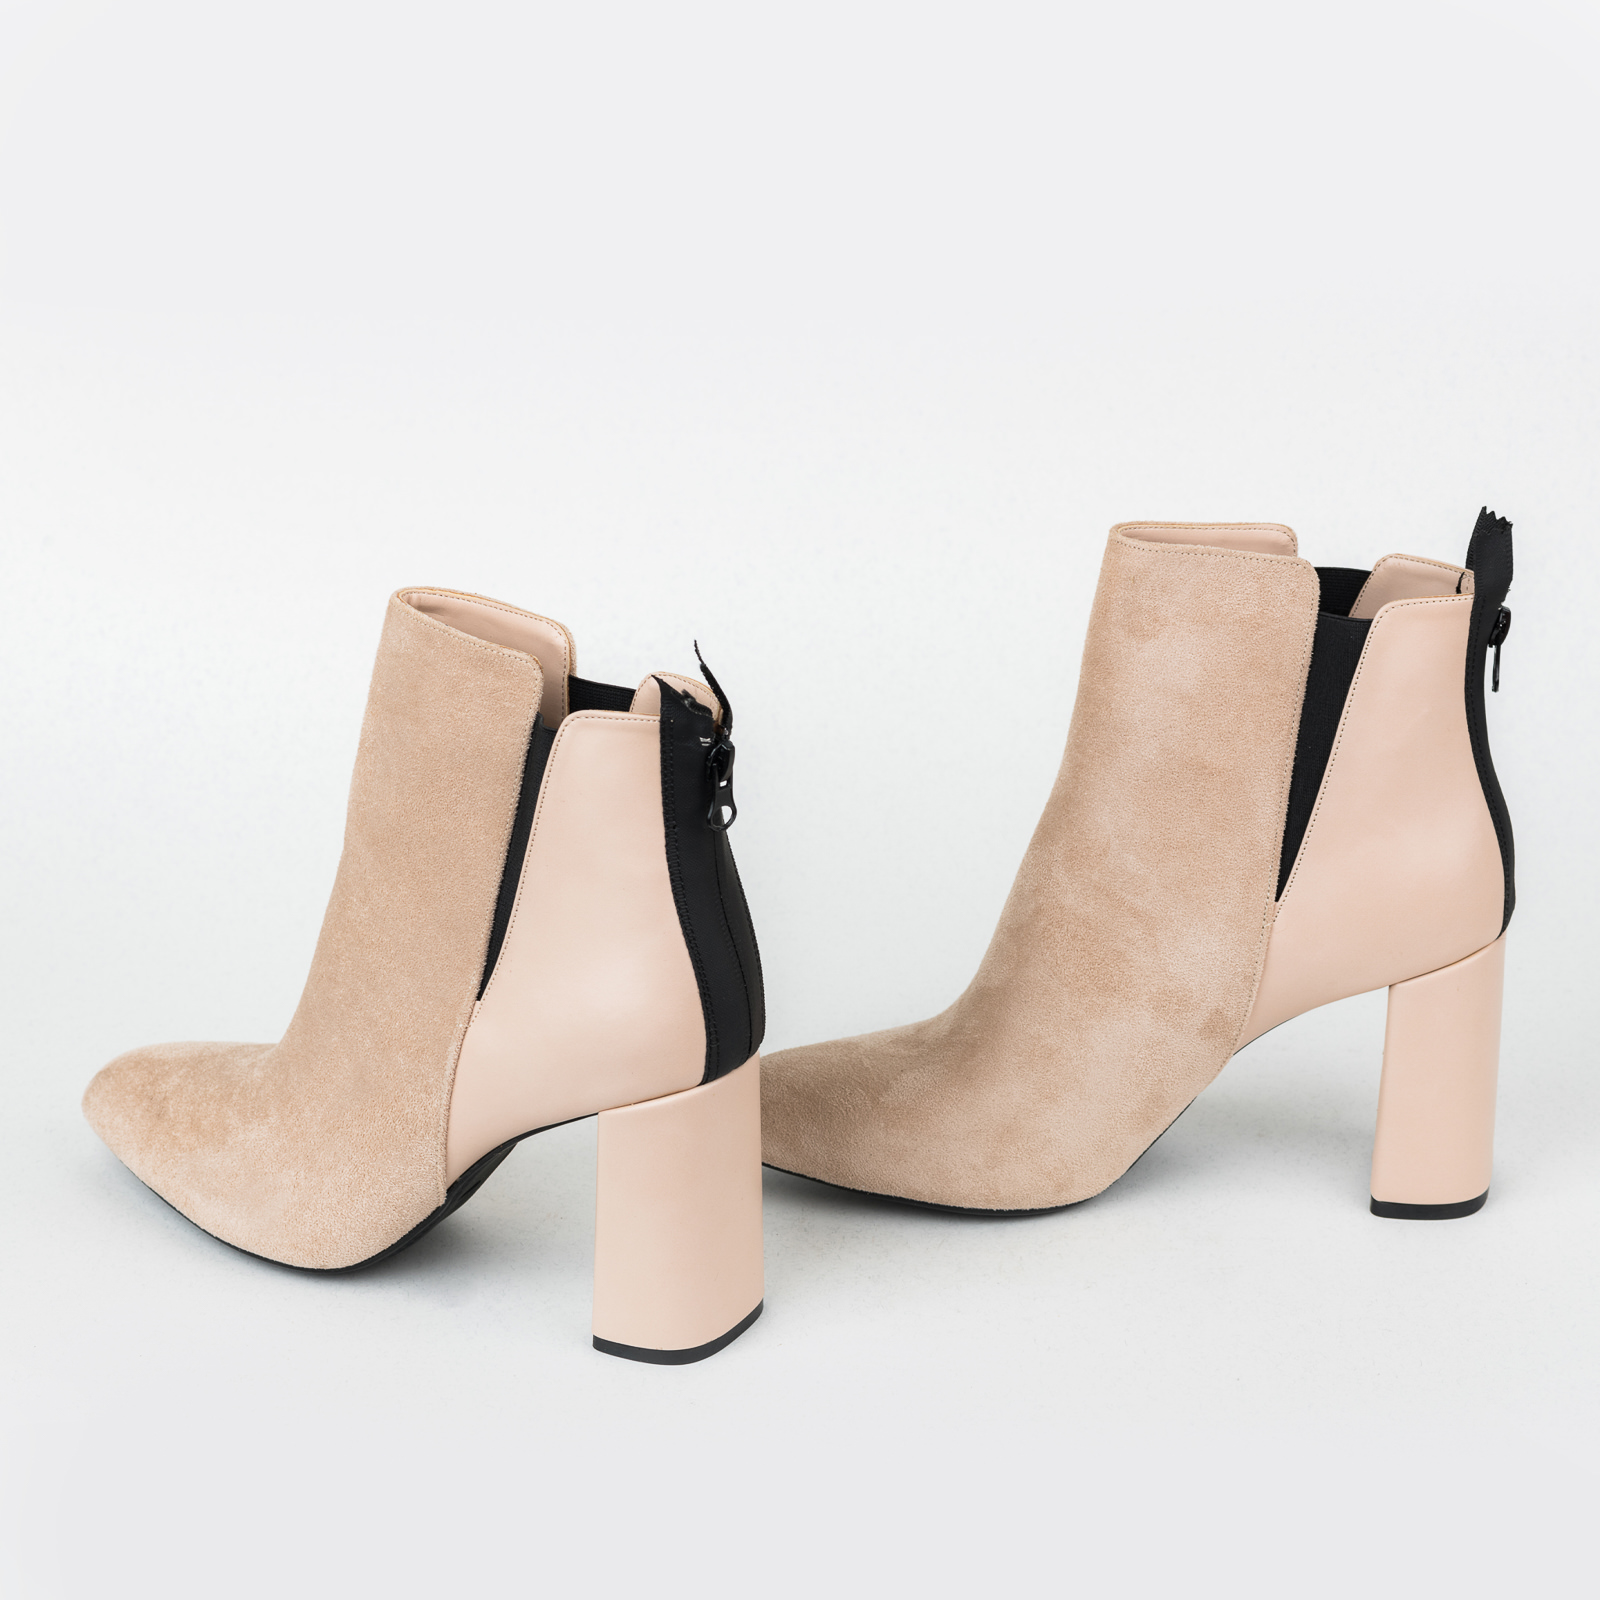 Women ankle boots B502 - BEIGE